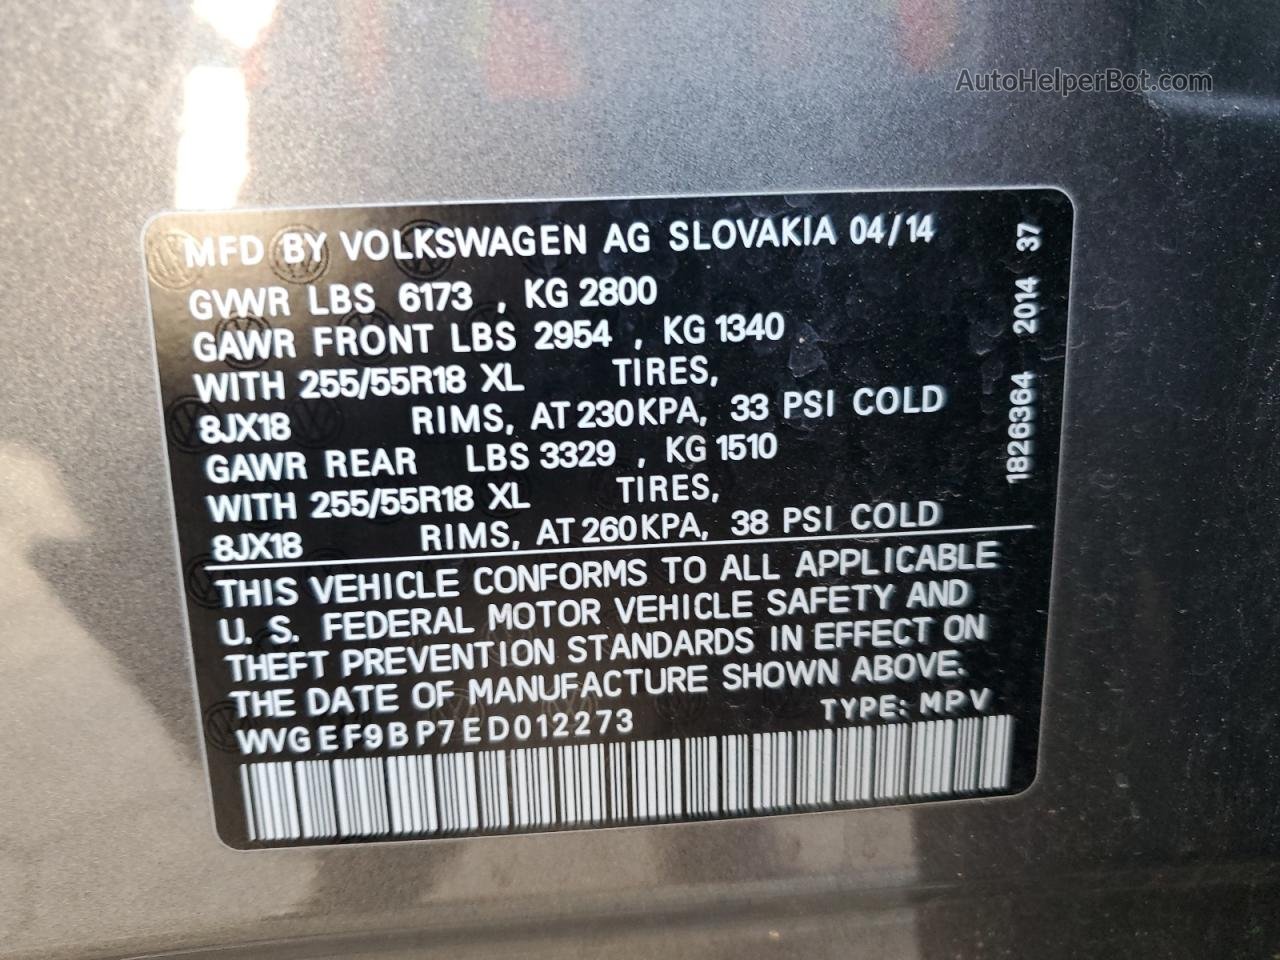 2014 Volkswagen Touareg V6 Gray vin: WVGEF9BP7ED012273